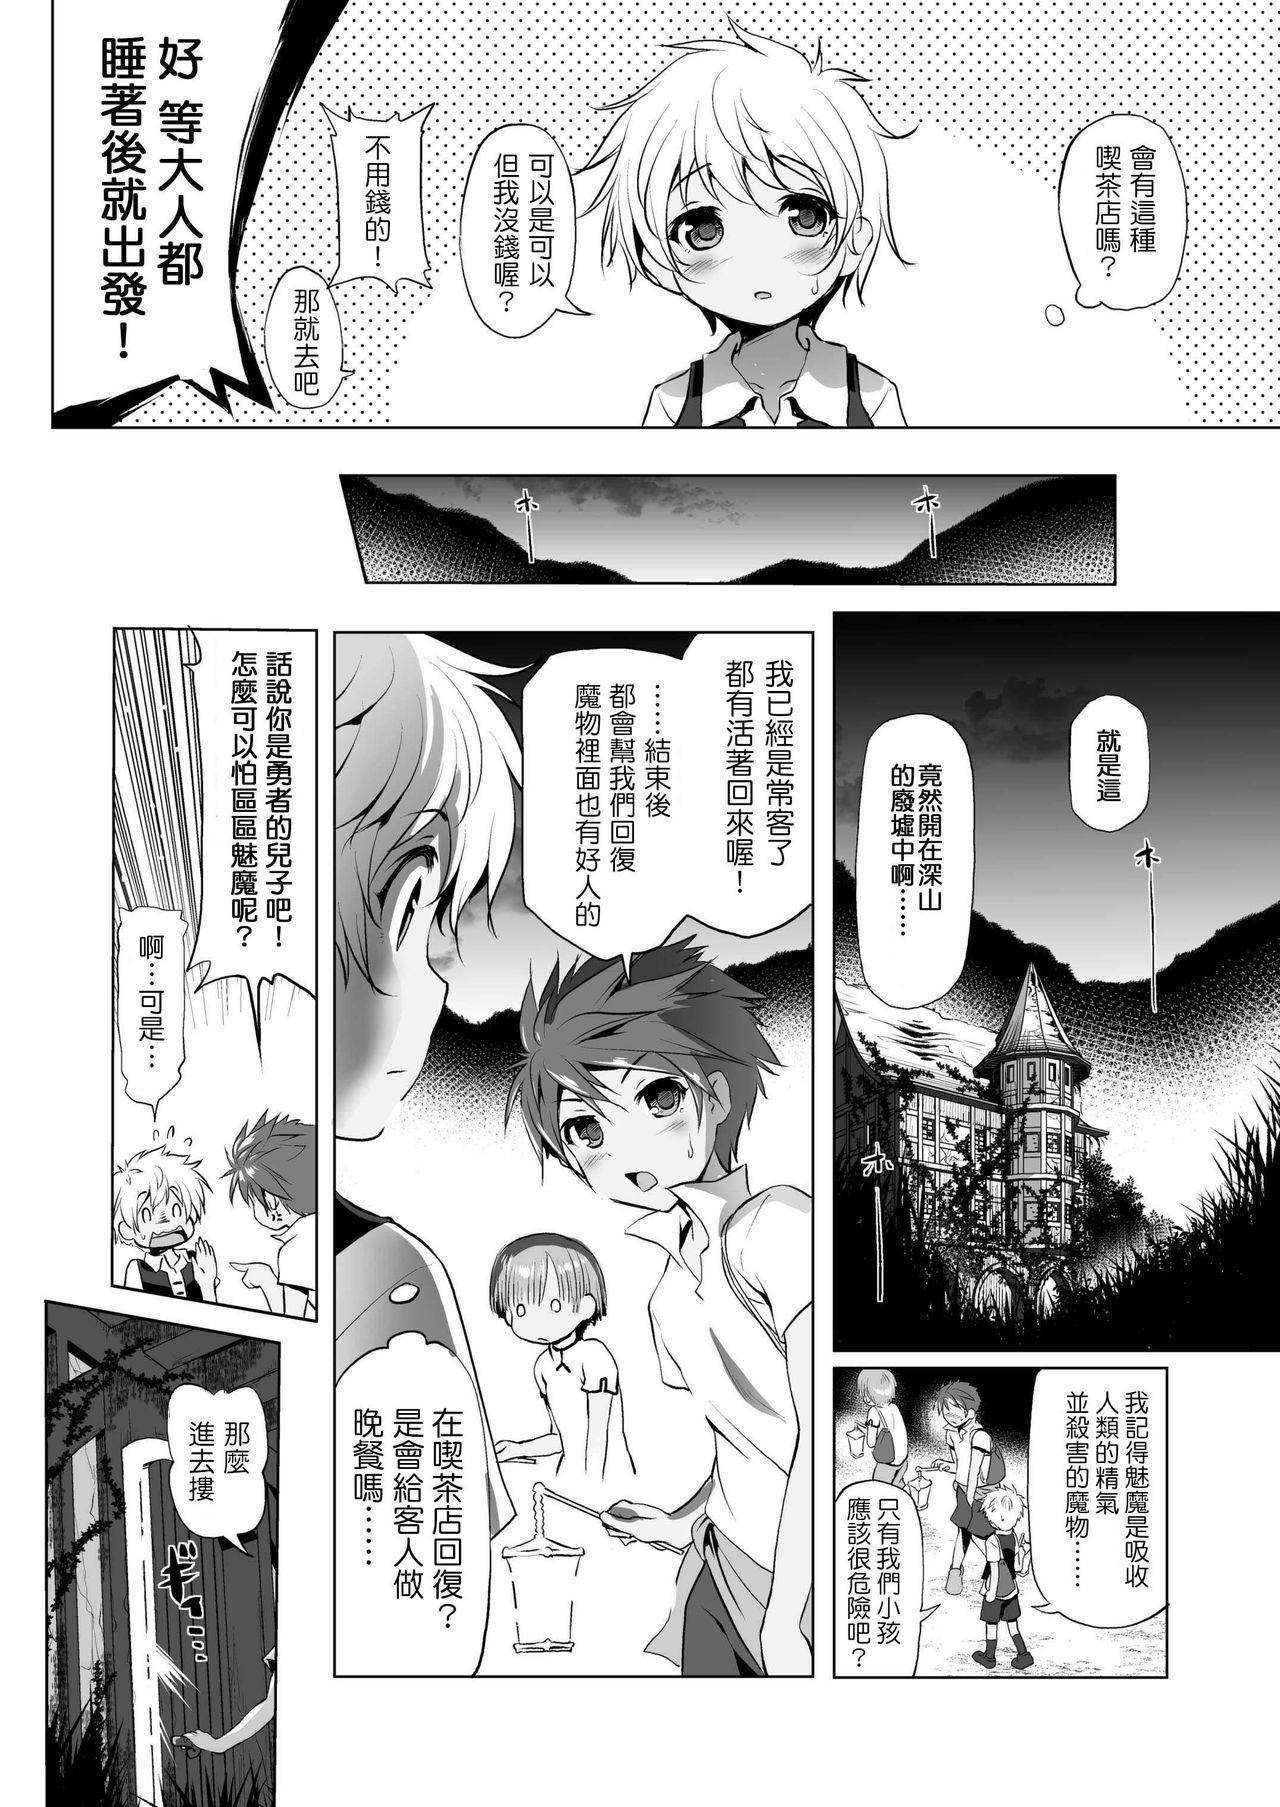 Twerk Makotoni Zannen desu ga Bouken no Sho 1 wa Kiete Shimaimashita. Boobs - Page 7